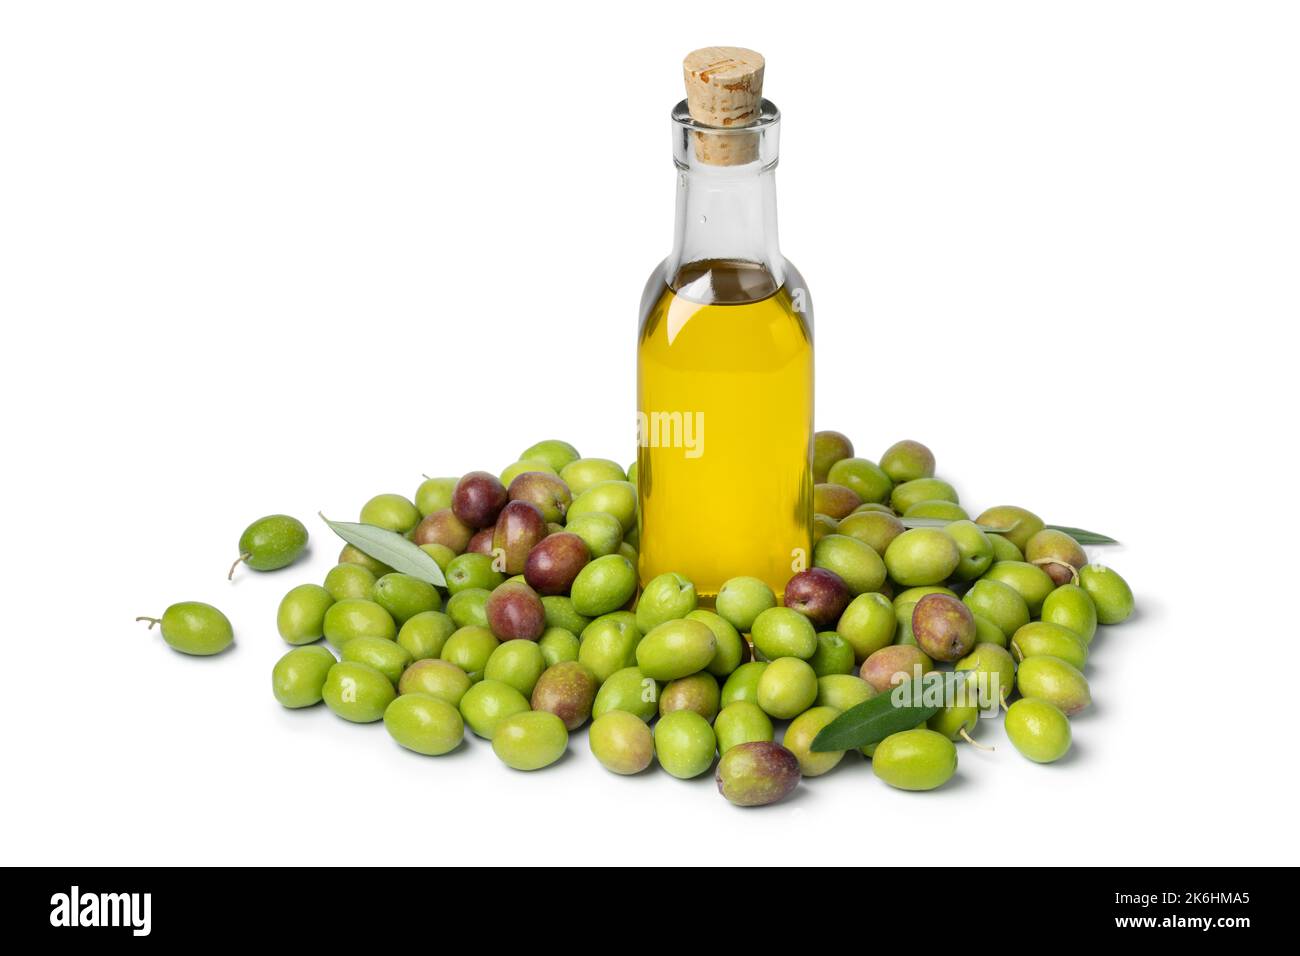 Botella de aceite de oliva rodeada de aceitunas verdes frescas aisladas sobre fondo blanco Foto de stock